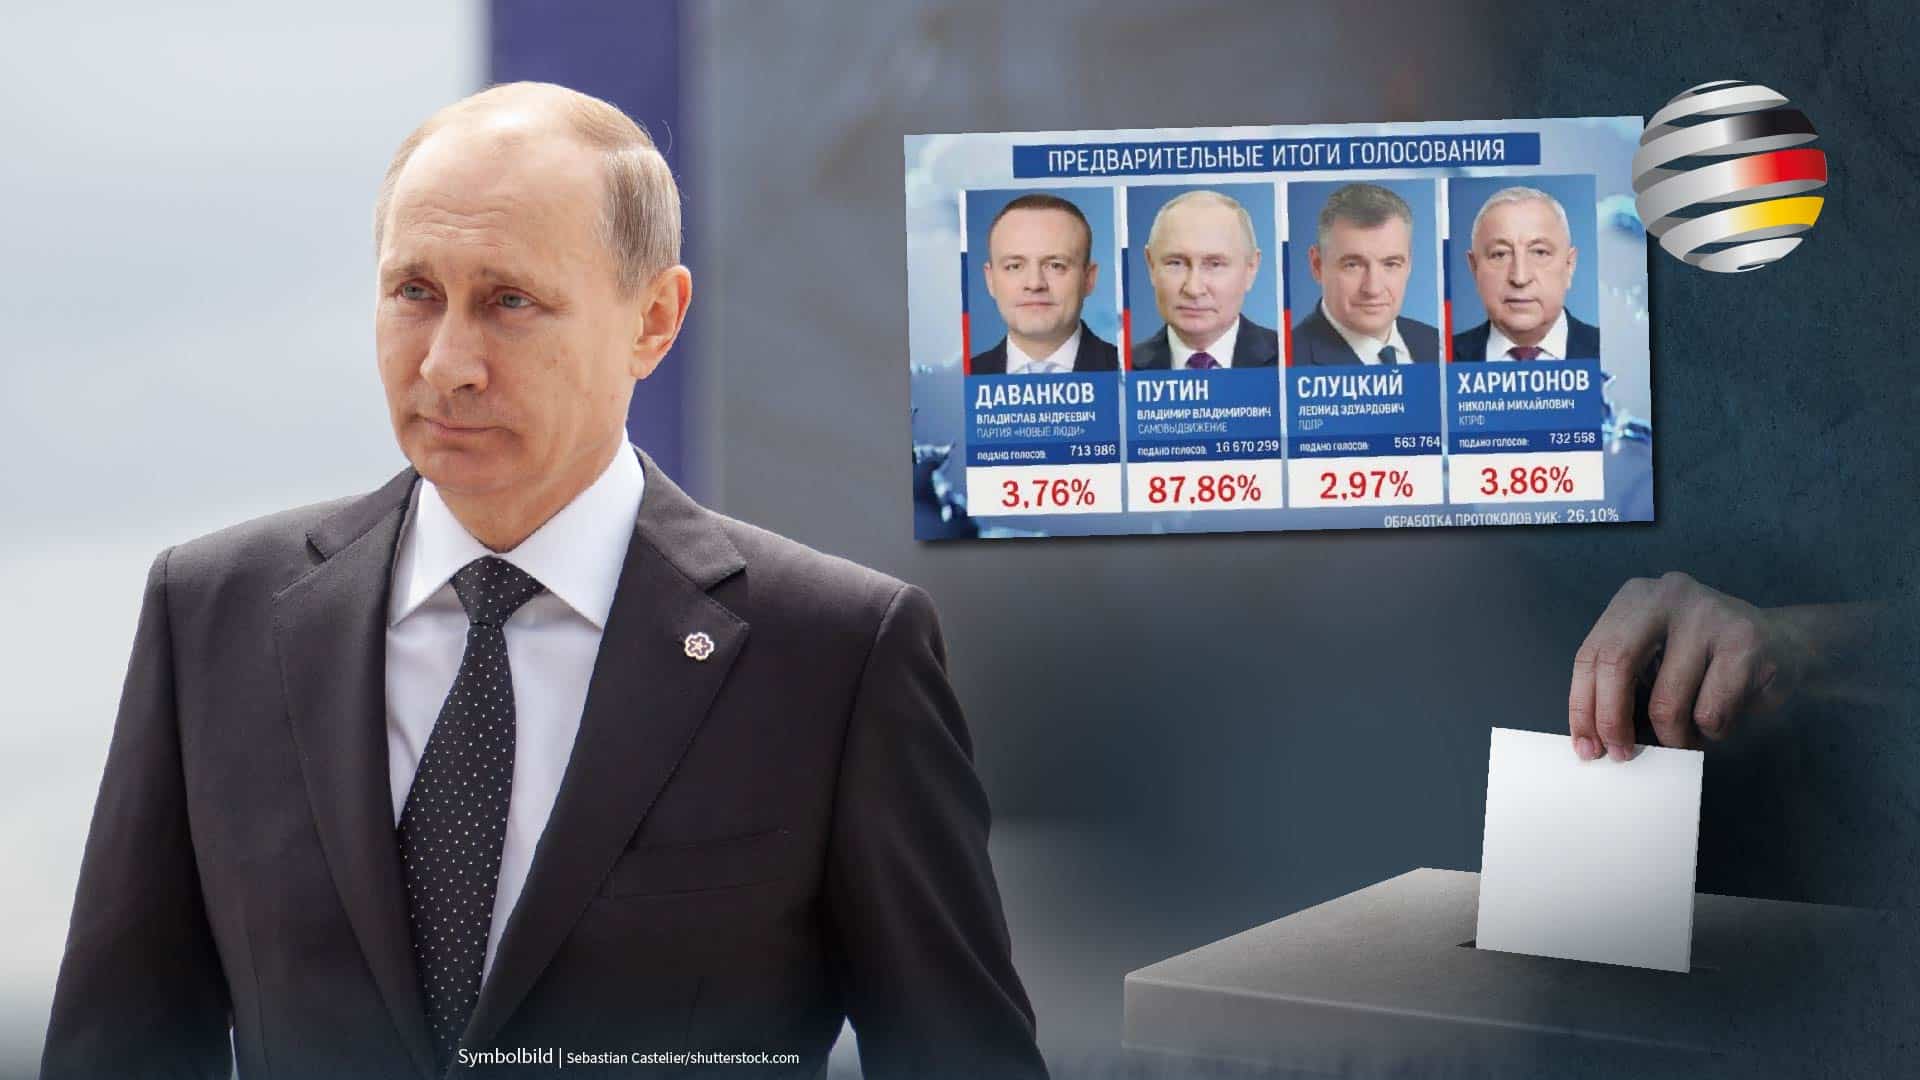 Russland-Wahlen: Wladimir Putin mit knapp 88 Prozent der Stimmen als Präsident bestätigt